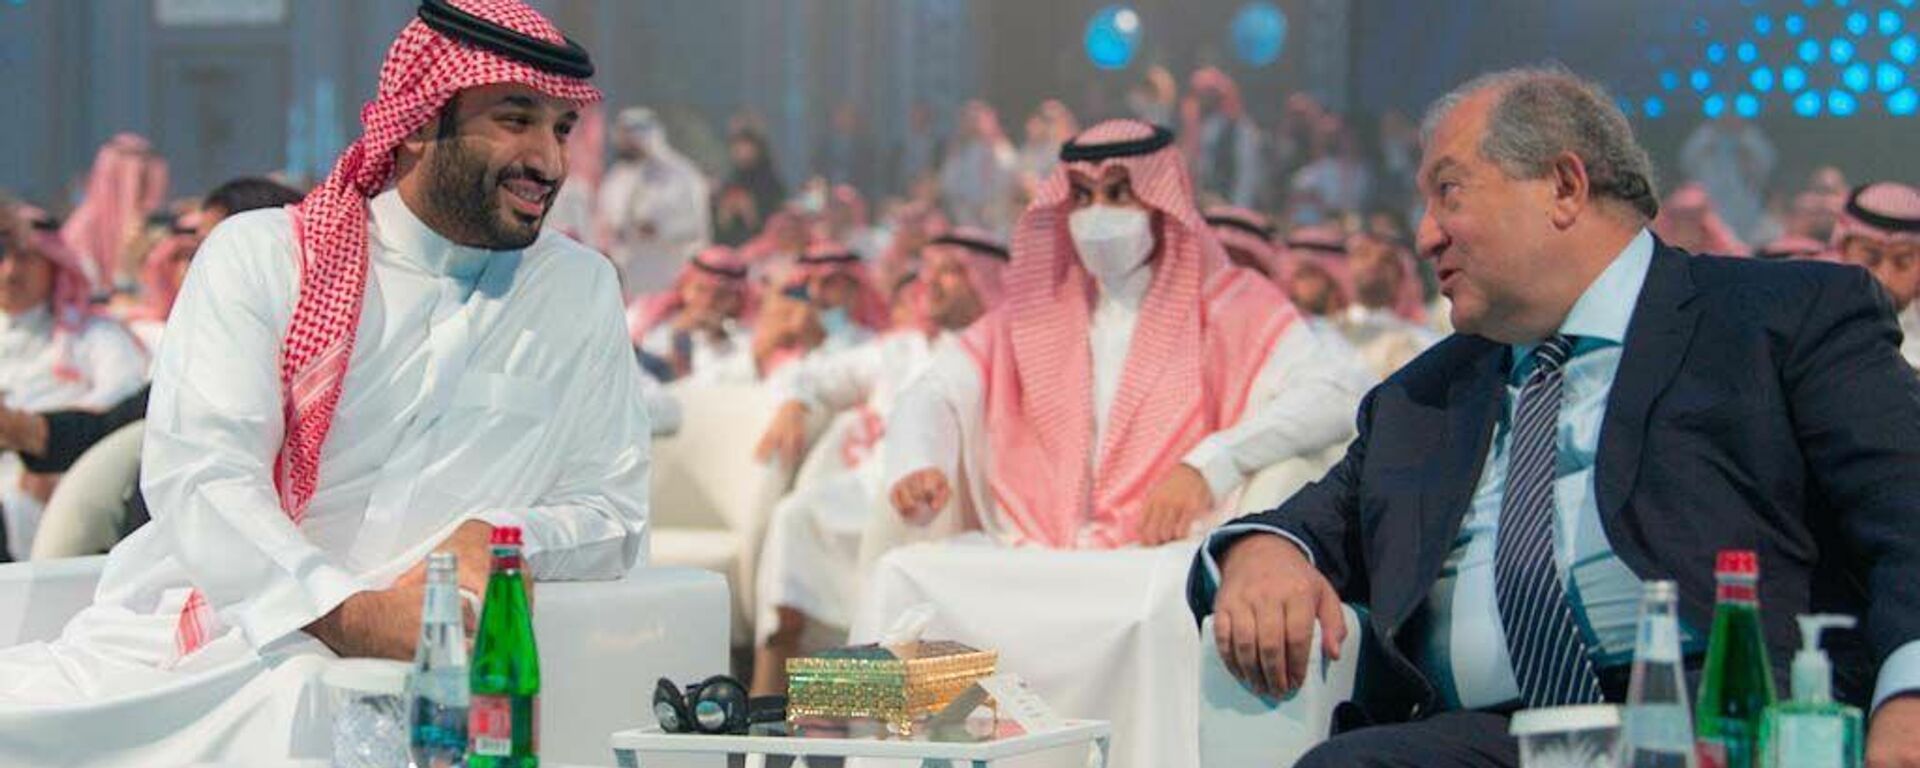 Президент Армен Саркисян посетил 5-й форум Будущая Инвестиционная инициатива в рамках визита в Саудовскую Аравию - Sputnik Արմենիա, 1920, 27.10.2021